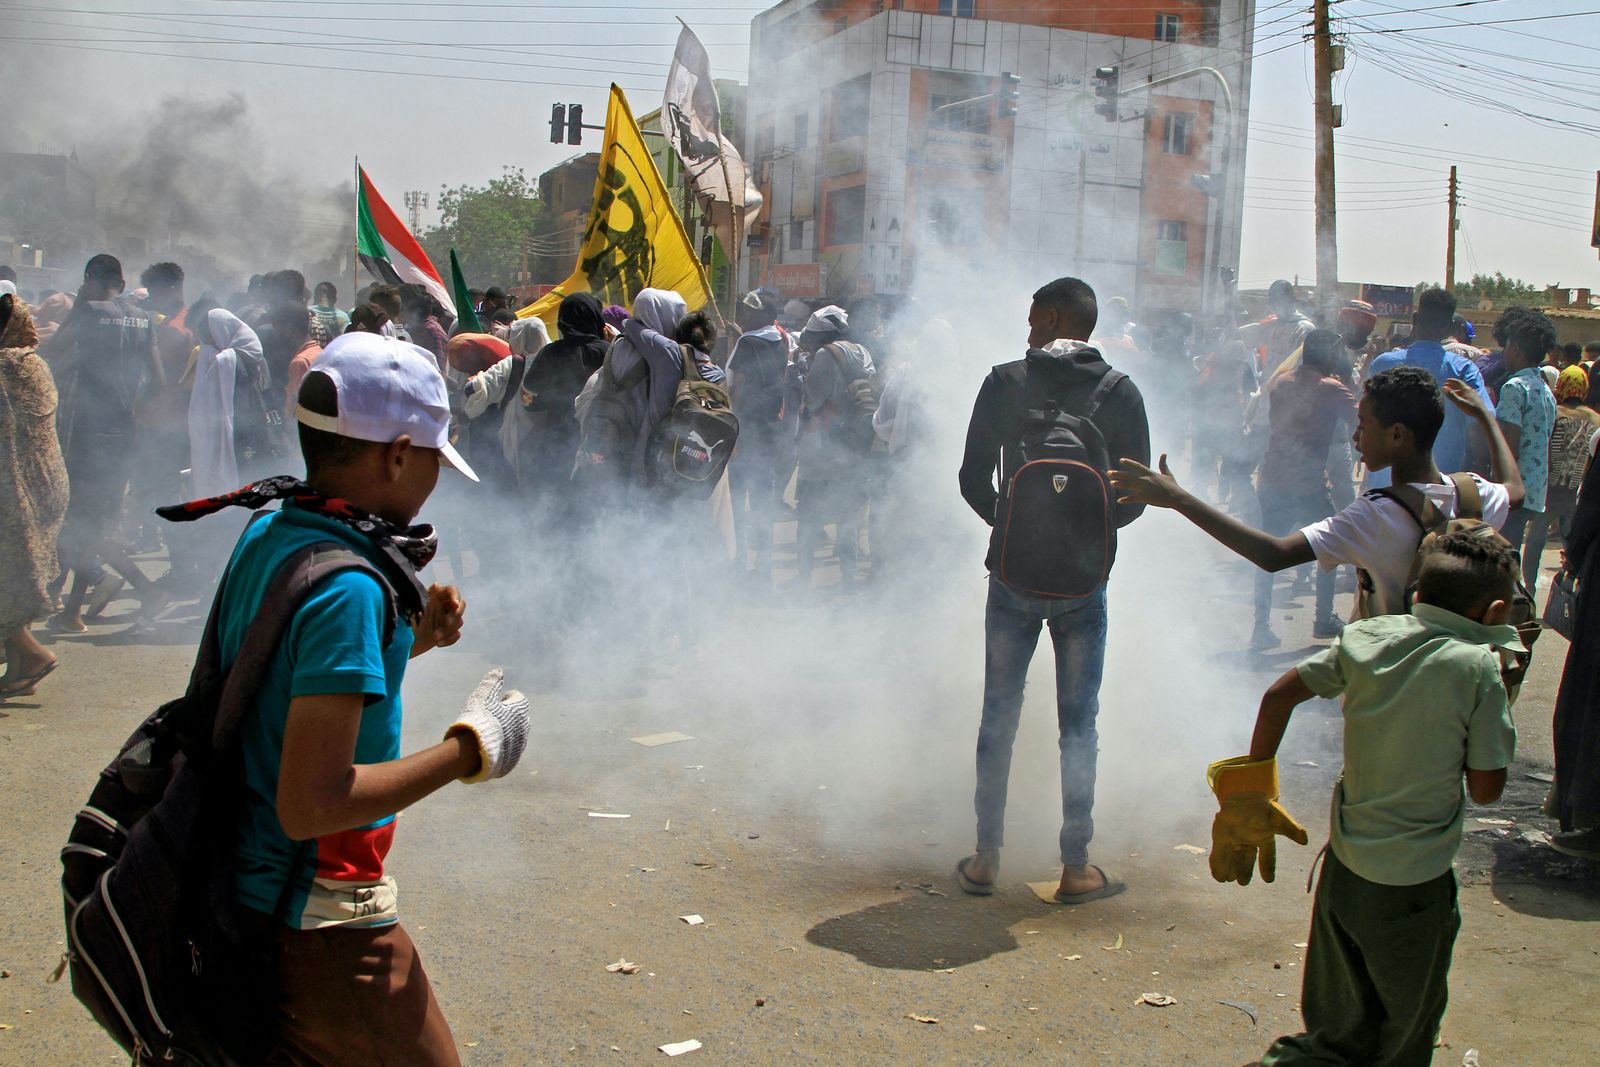 متظاهرون سودانيون خلال احتجاجات في الخرطوم ردت عليها قوات الأمن بالغازات المسيلة للدموع- 14 مارس 2022 - AFP